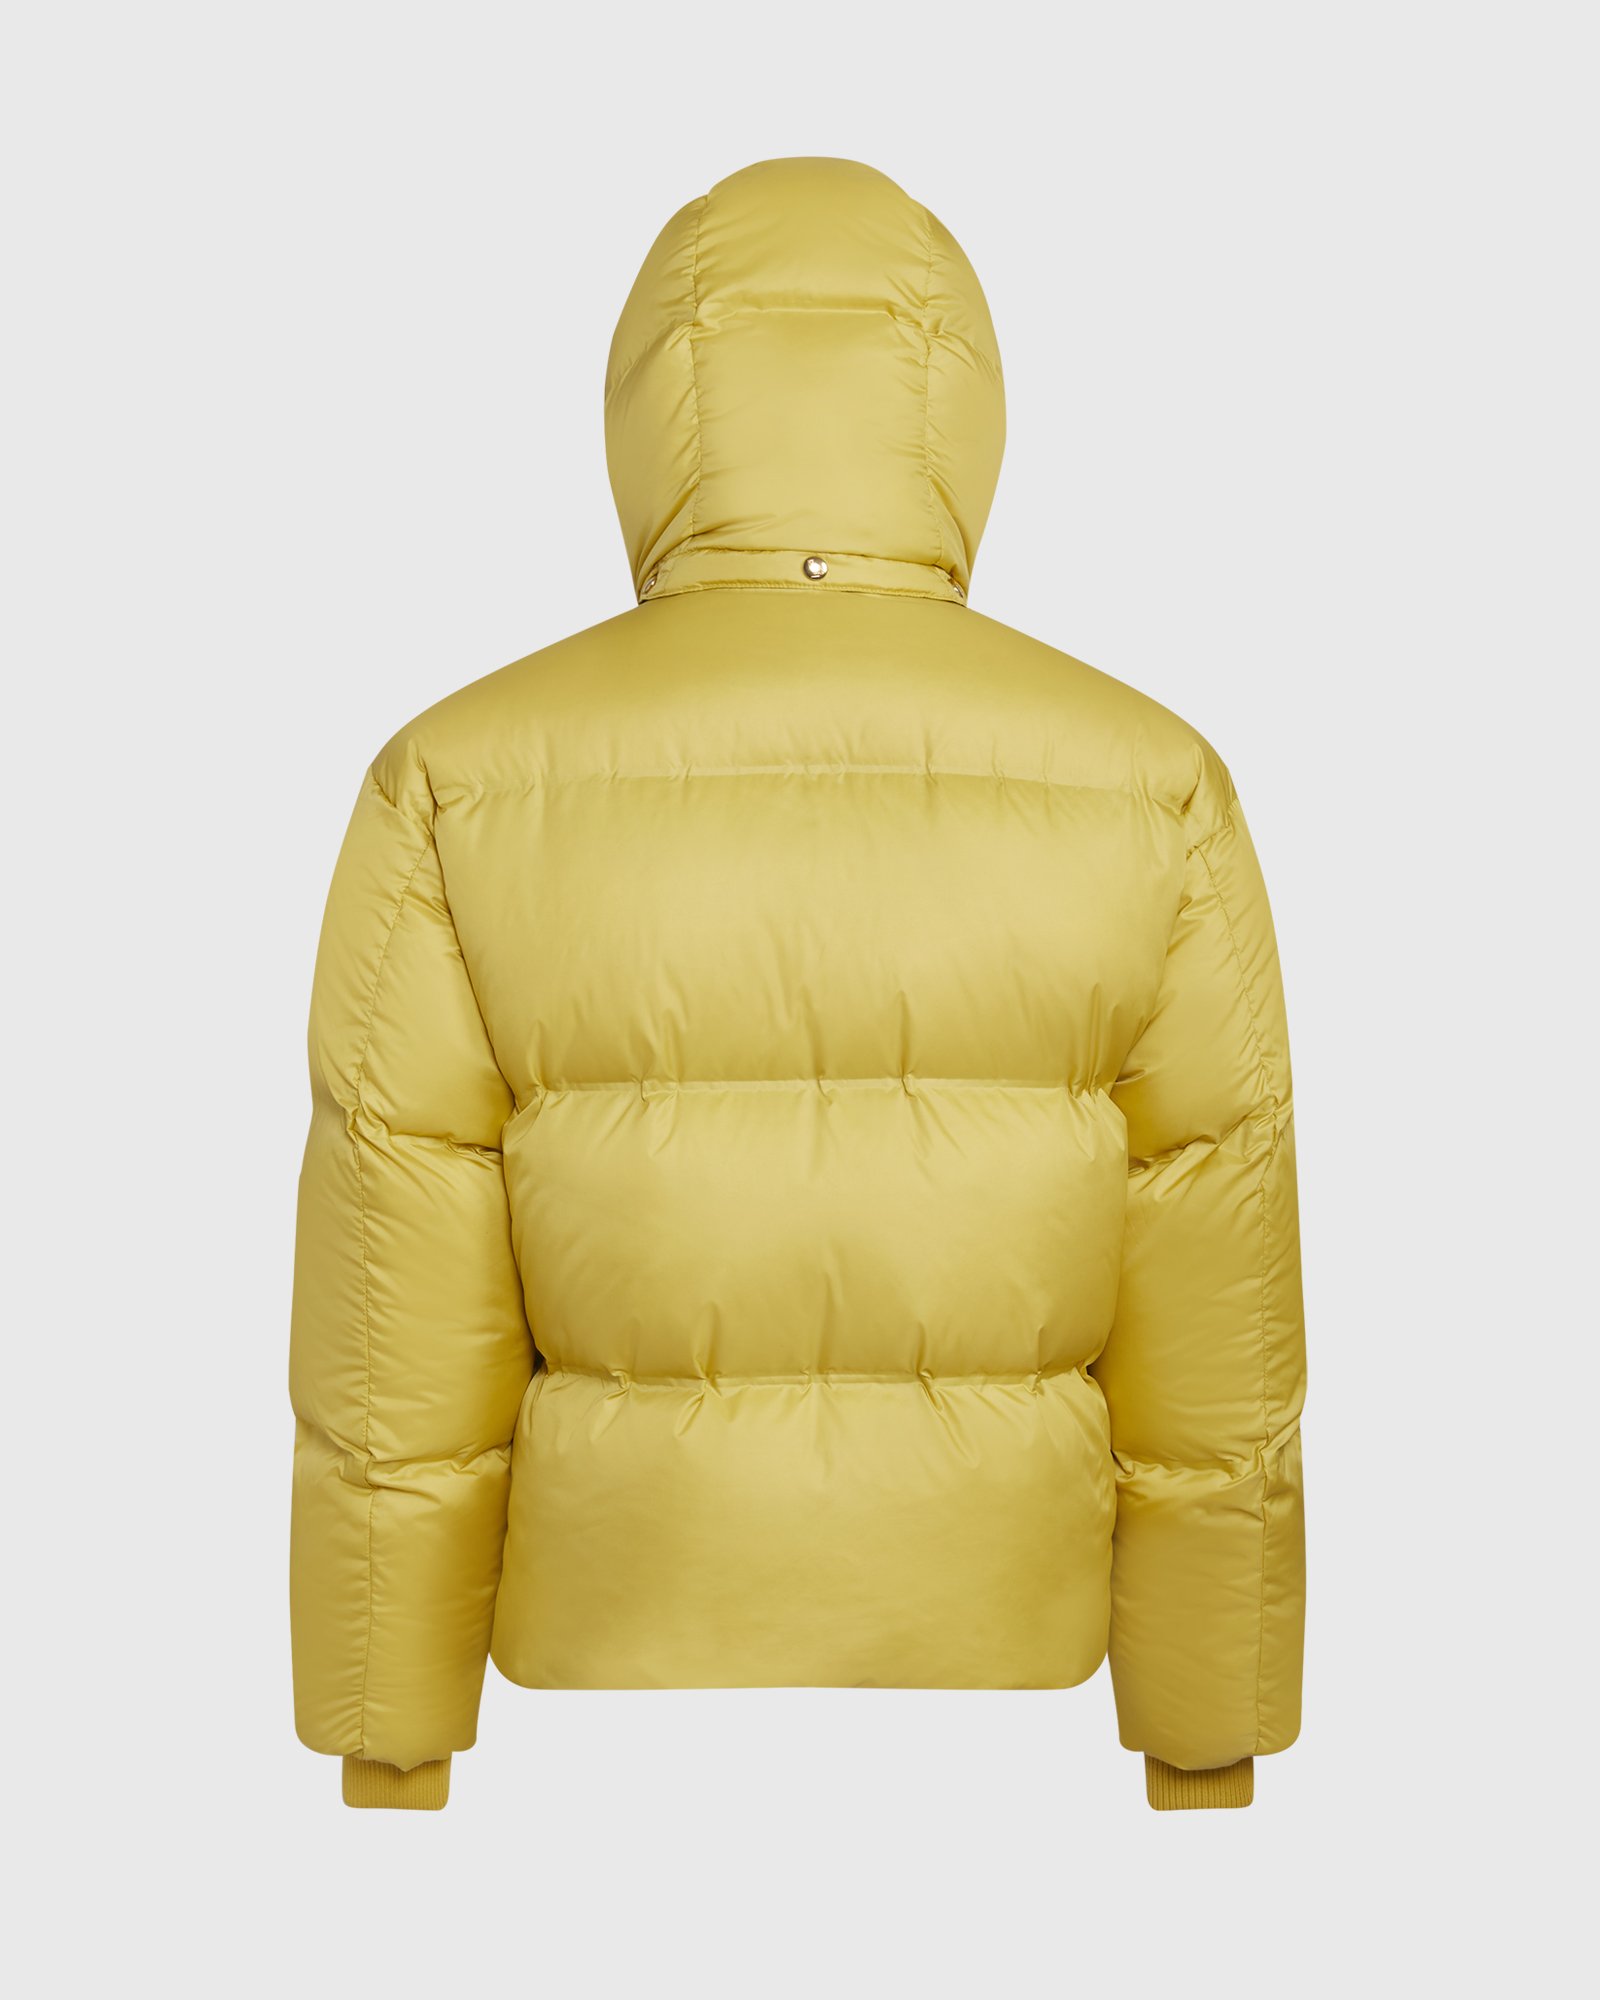 OVO-bounce-jacket-yellow-2.jpg